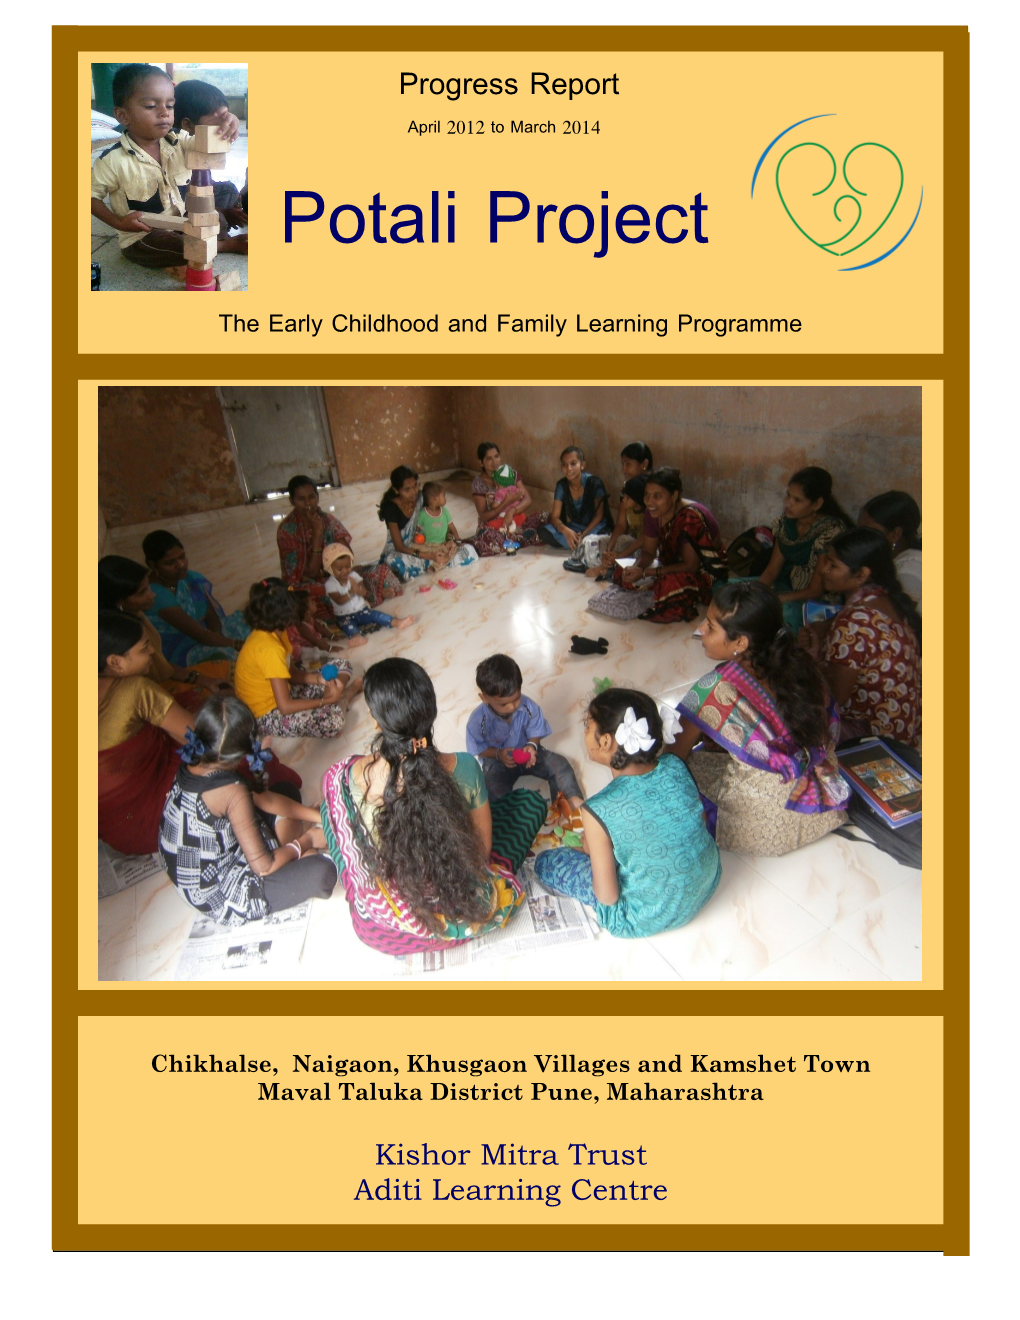 Potali Project